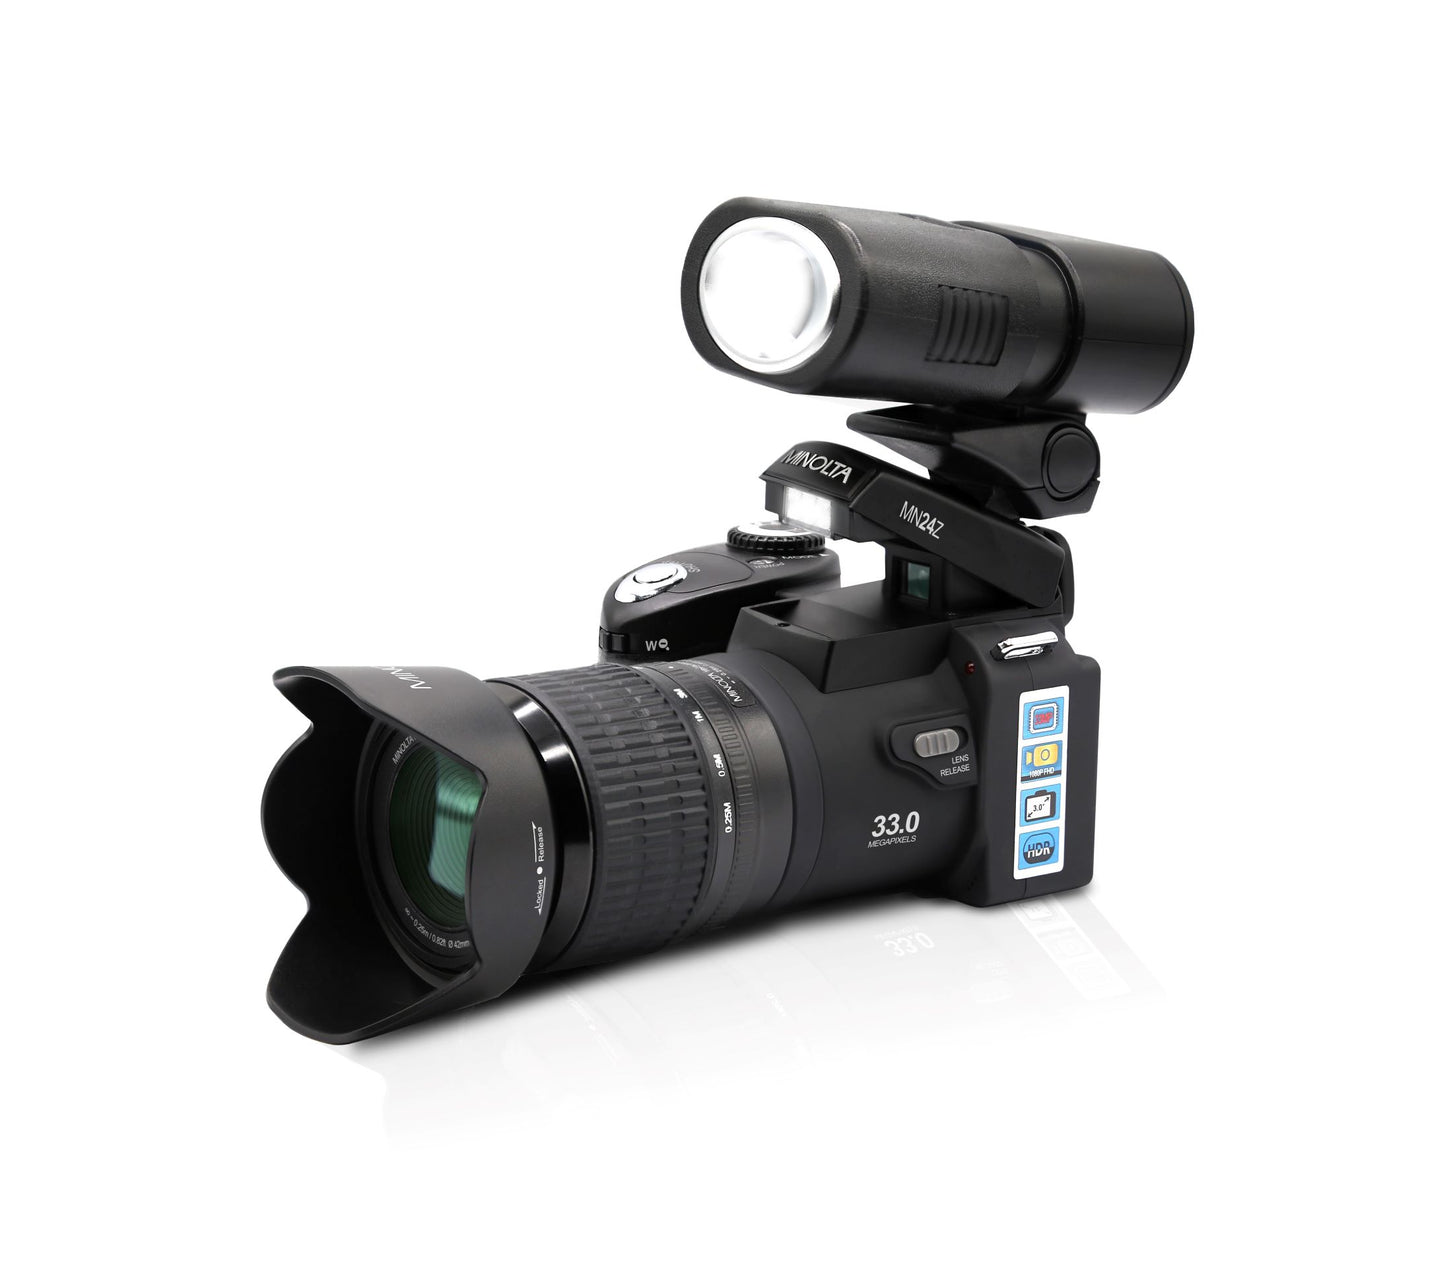 MN24Z 33 MP / 1080p HD Digital Camera w/Interchangeable Lens Kit